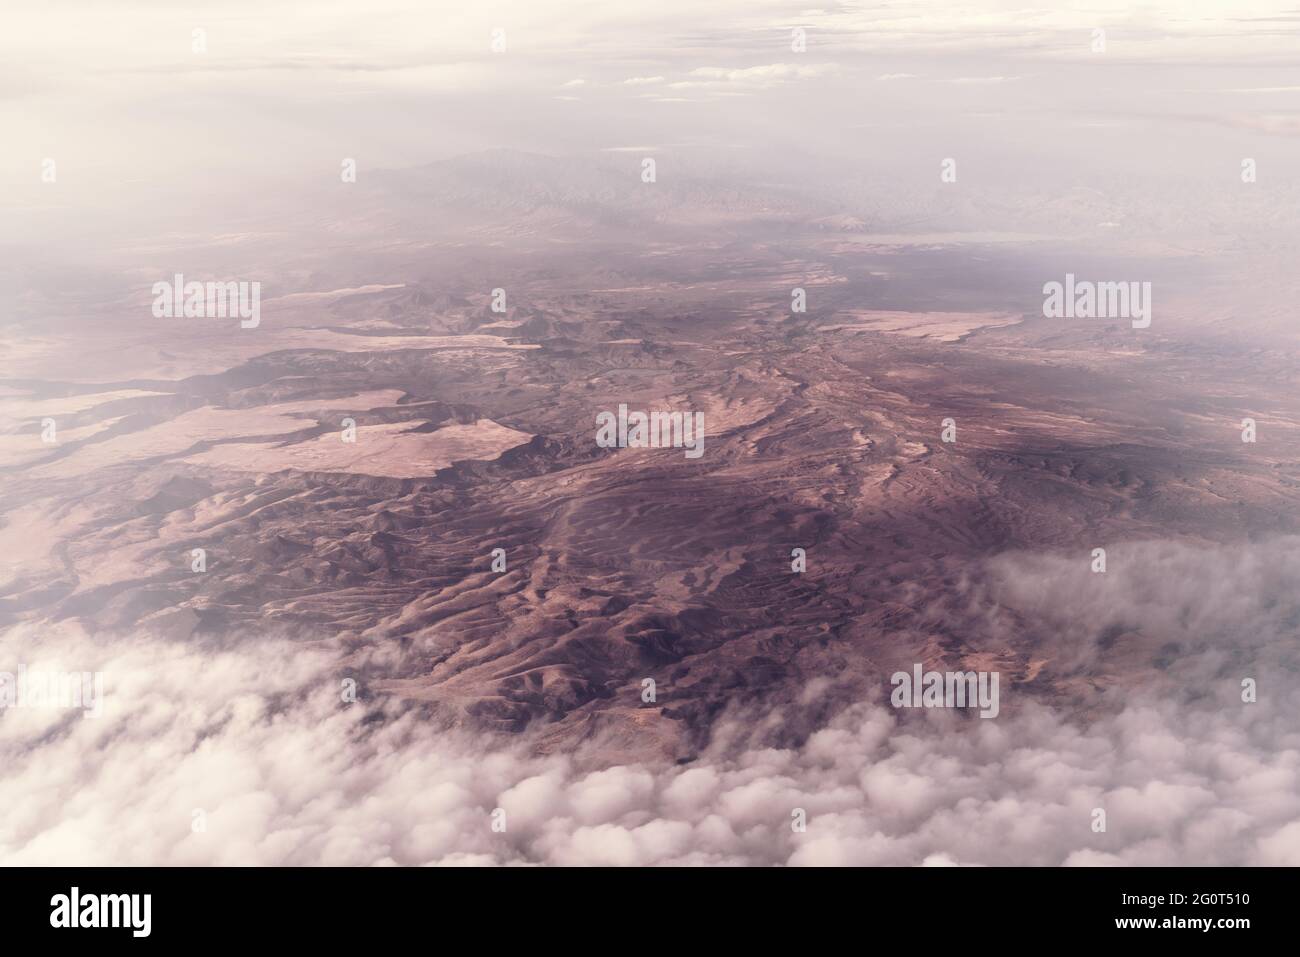 Vue aérienne du désert de l'Arizona. Nuages sur les montagnes près de San Carlos, San Carlos Apache Indian Reservation, Gila County, AZ, USA. Banque D'Images